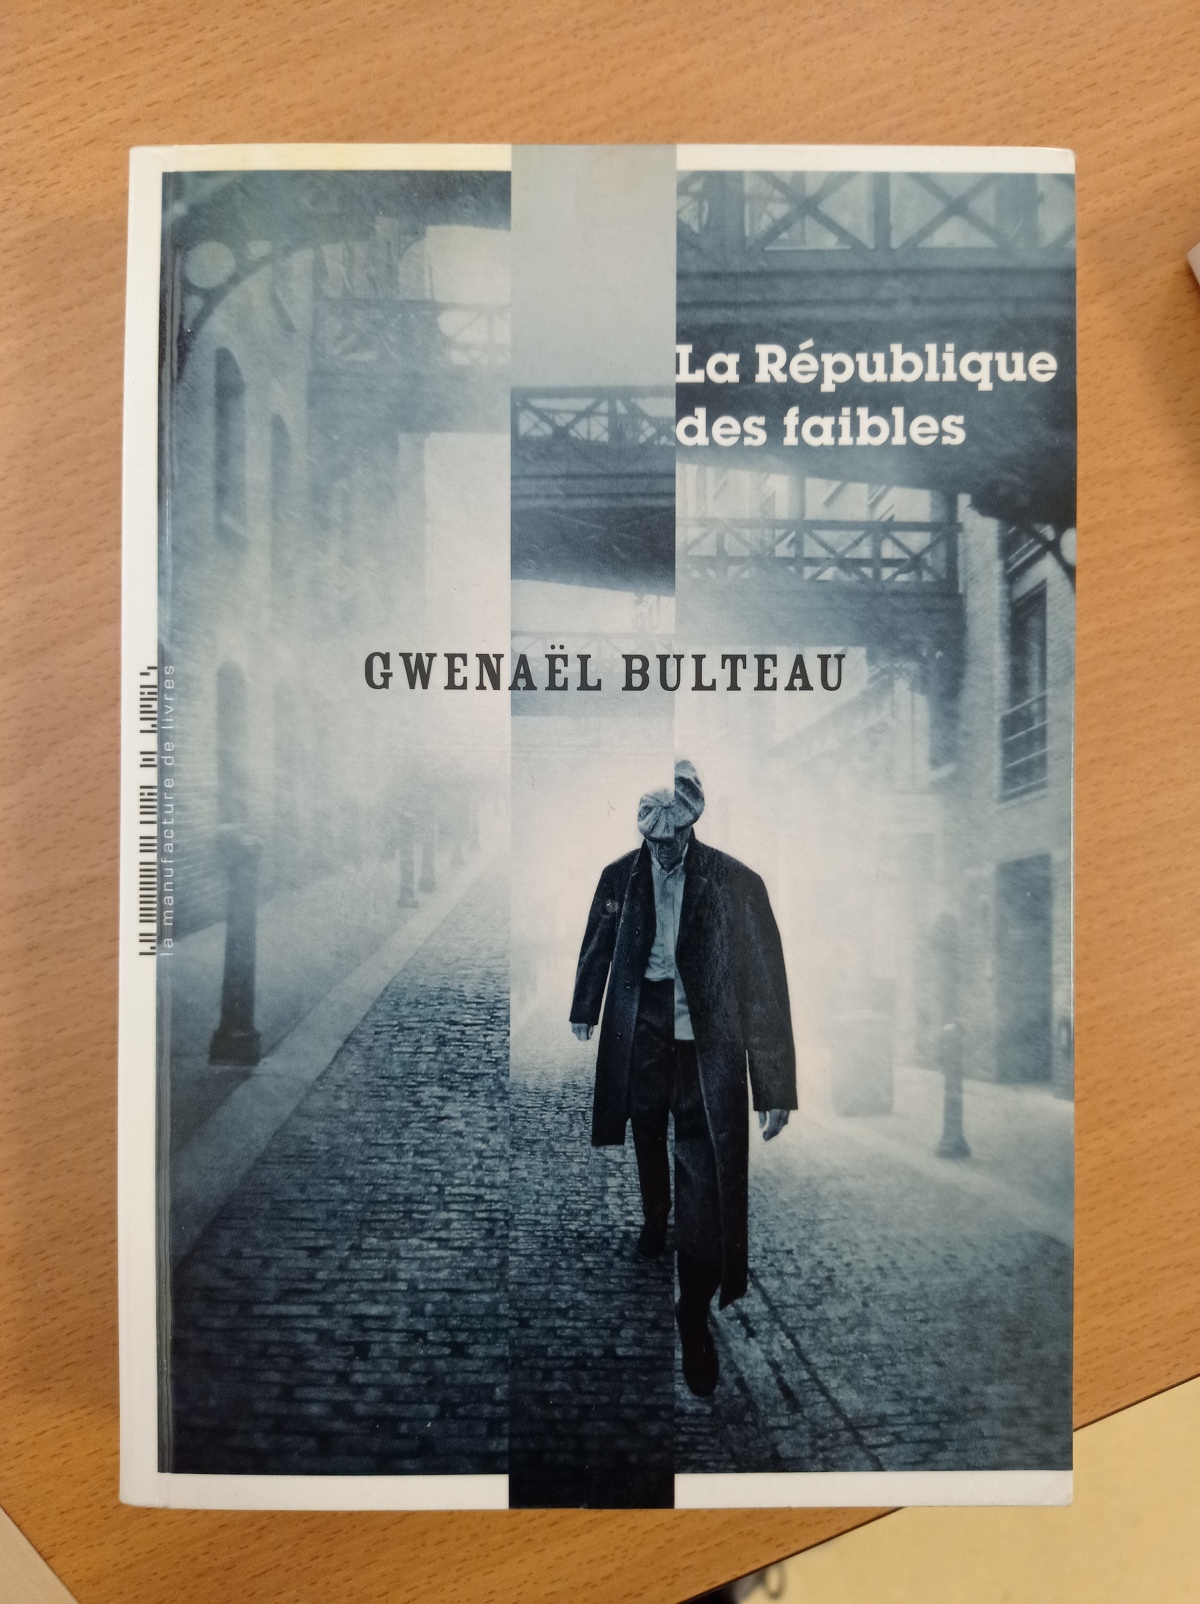 La République des faibles / Gwenaël Bulteau